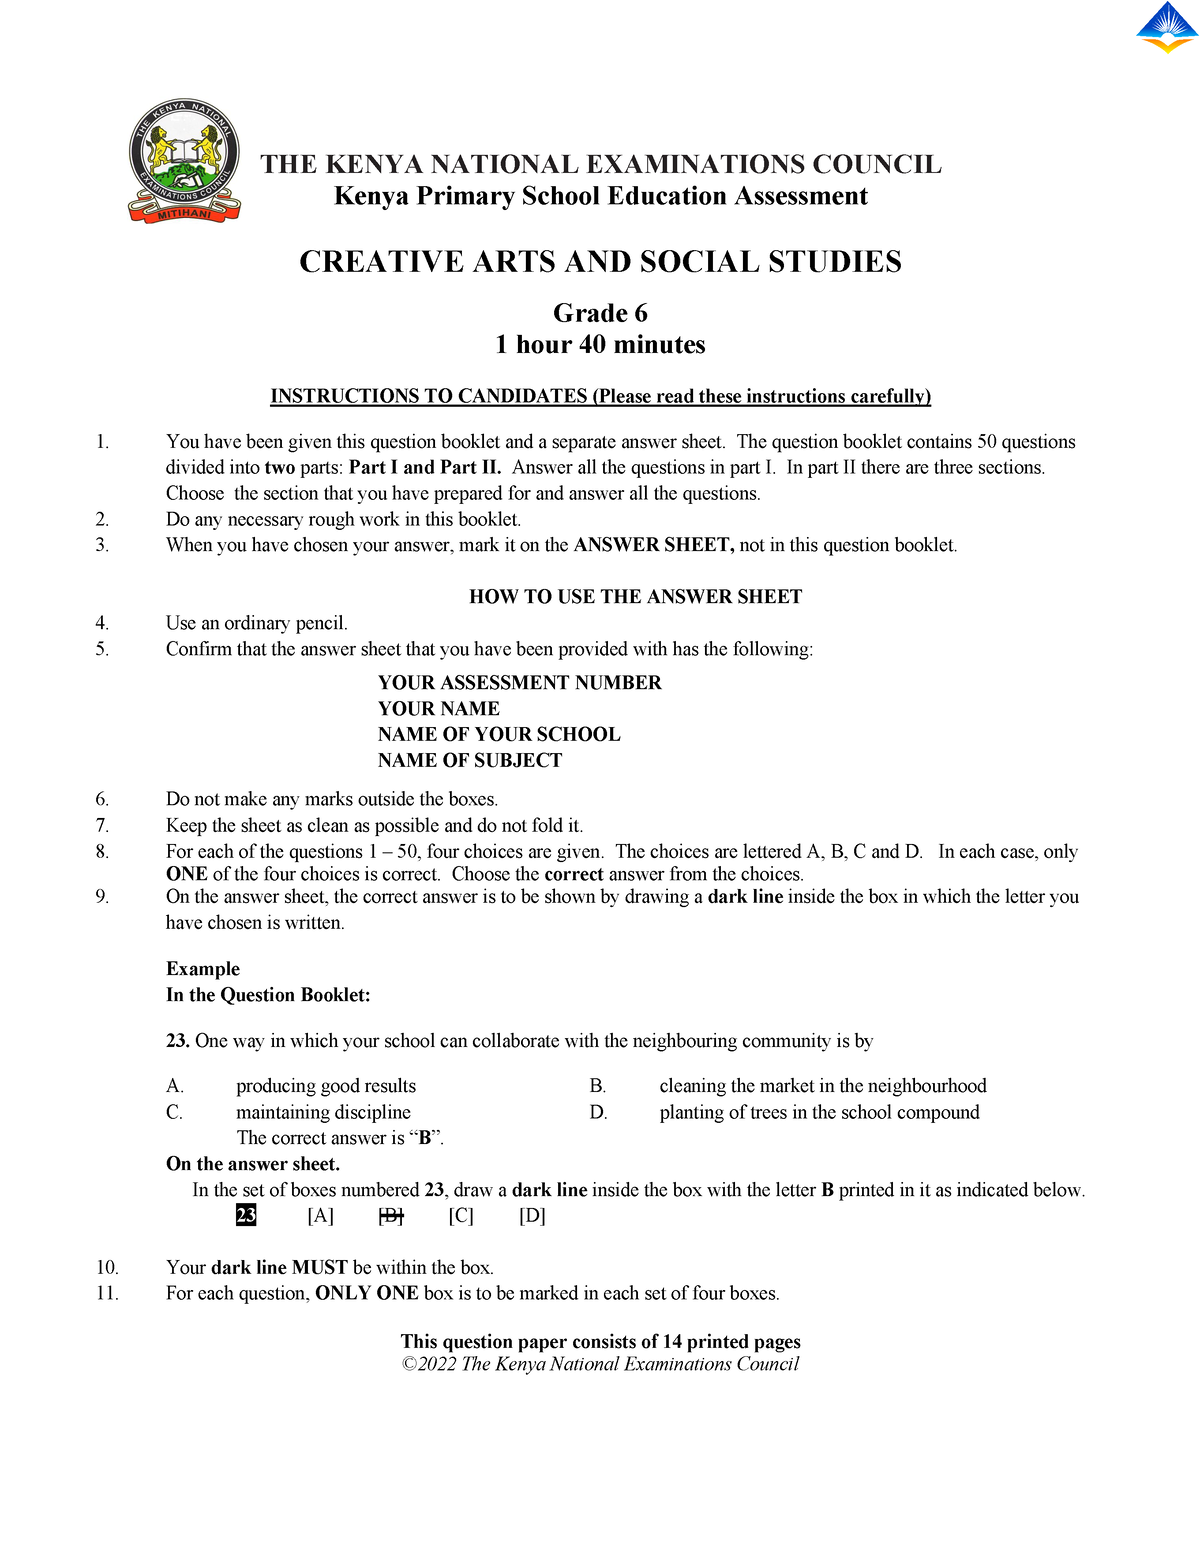 Creative Art And Social Grade 6 Sample The Kenya National Examinations Council Kenya Primary 3062